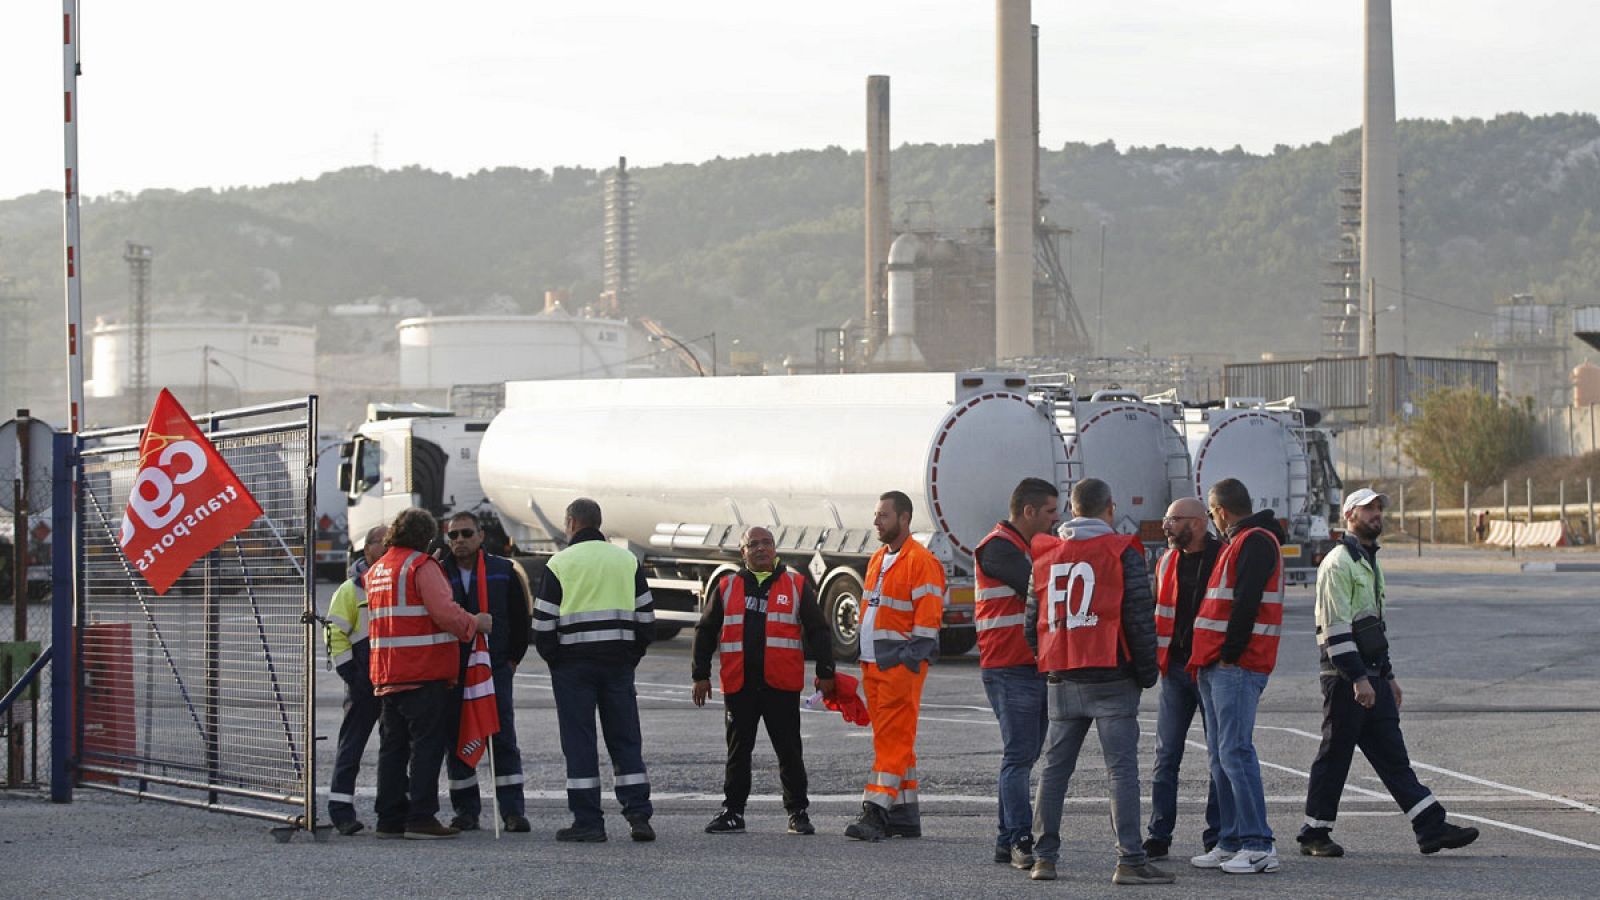 Sindicalistas de la Federación Nacional de Transporte y Logística bloquean una refinería de Total Oil